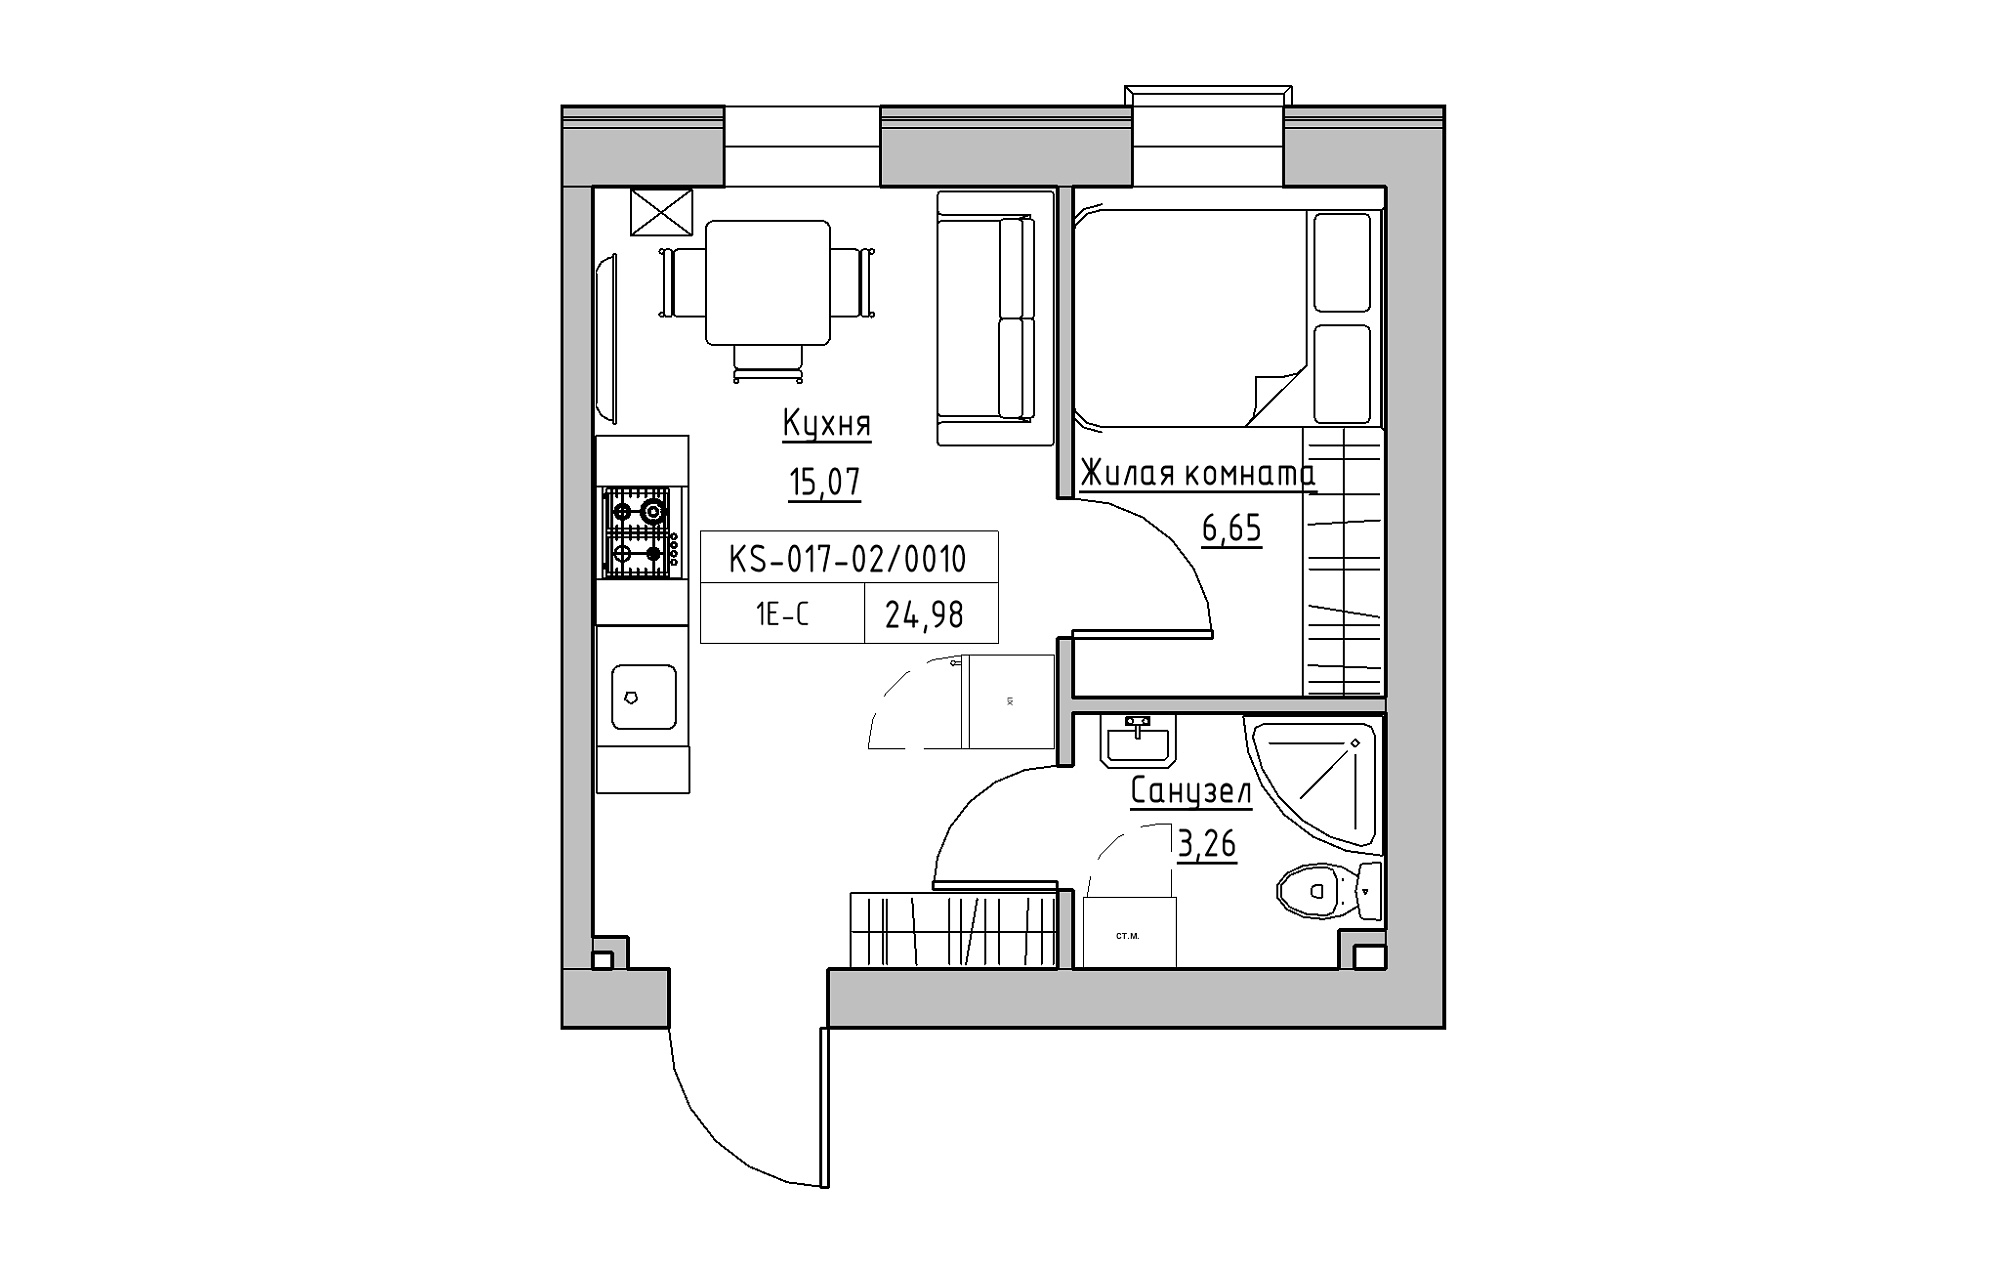 Планування 1-к квартира площею 24.98м2, KS-017-02/0010.